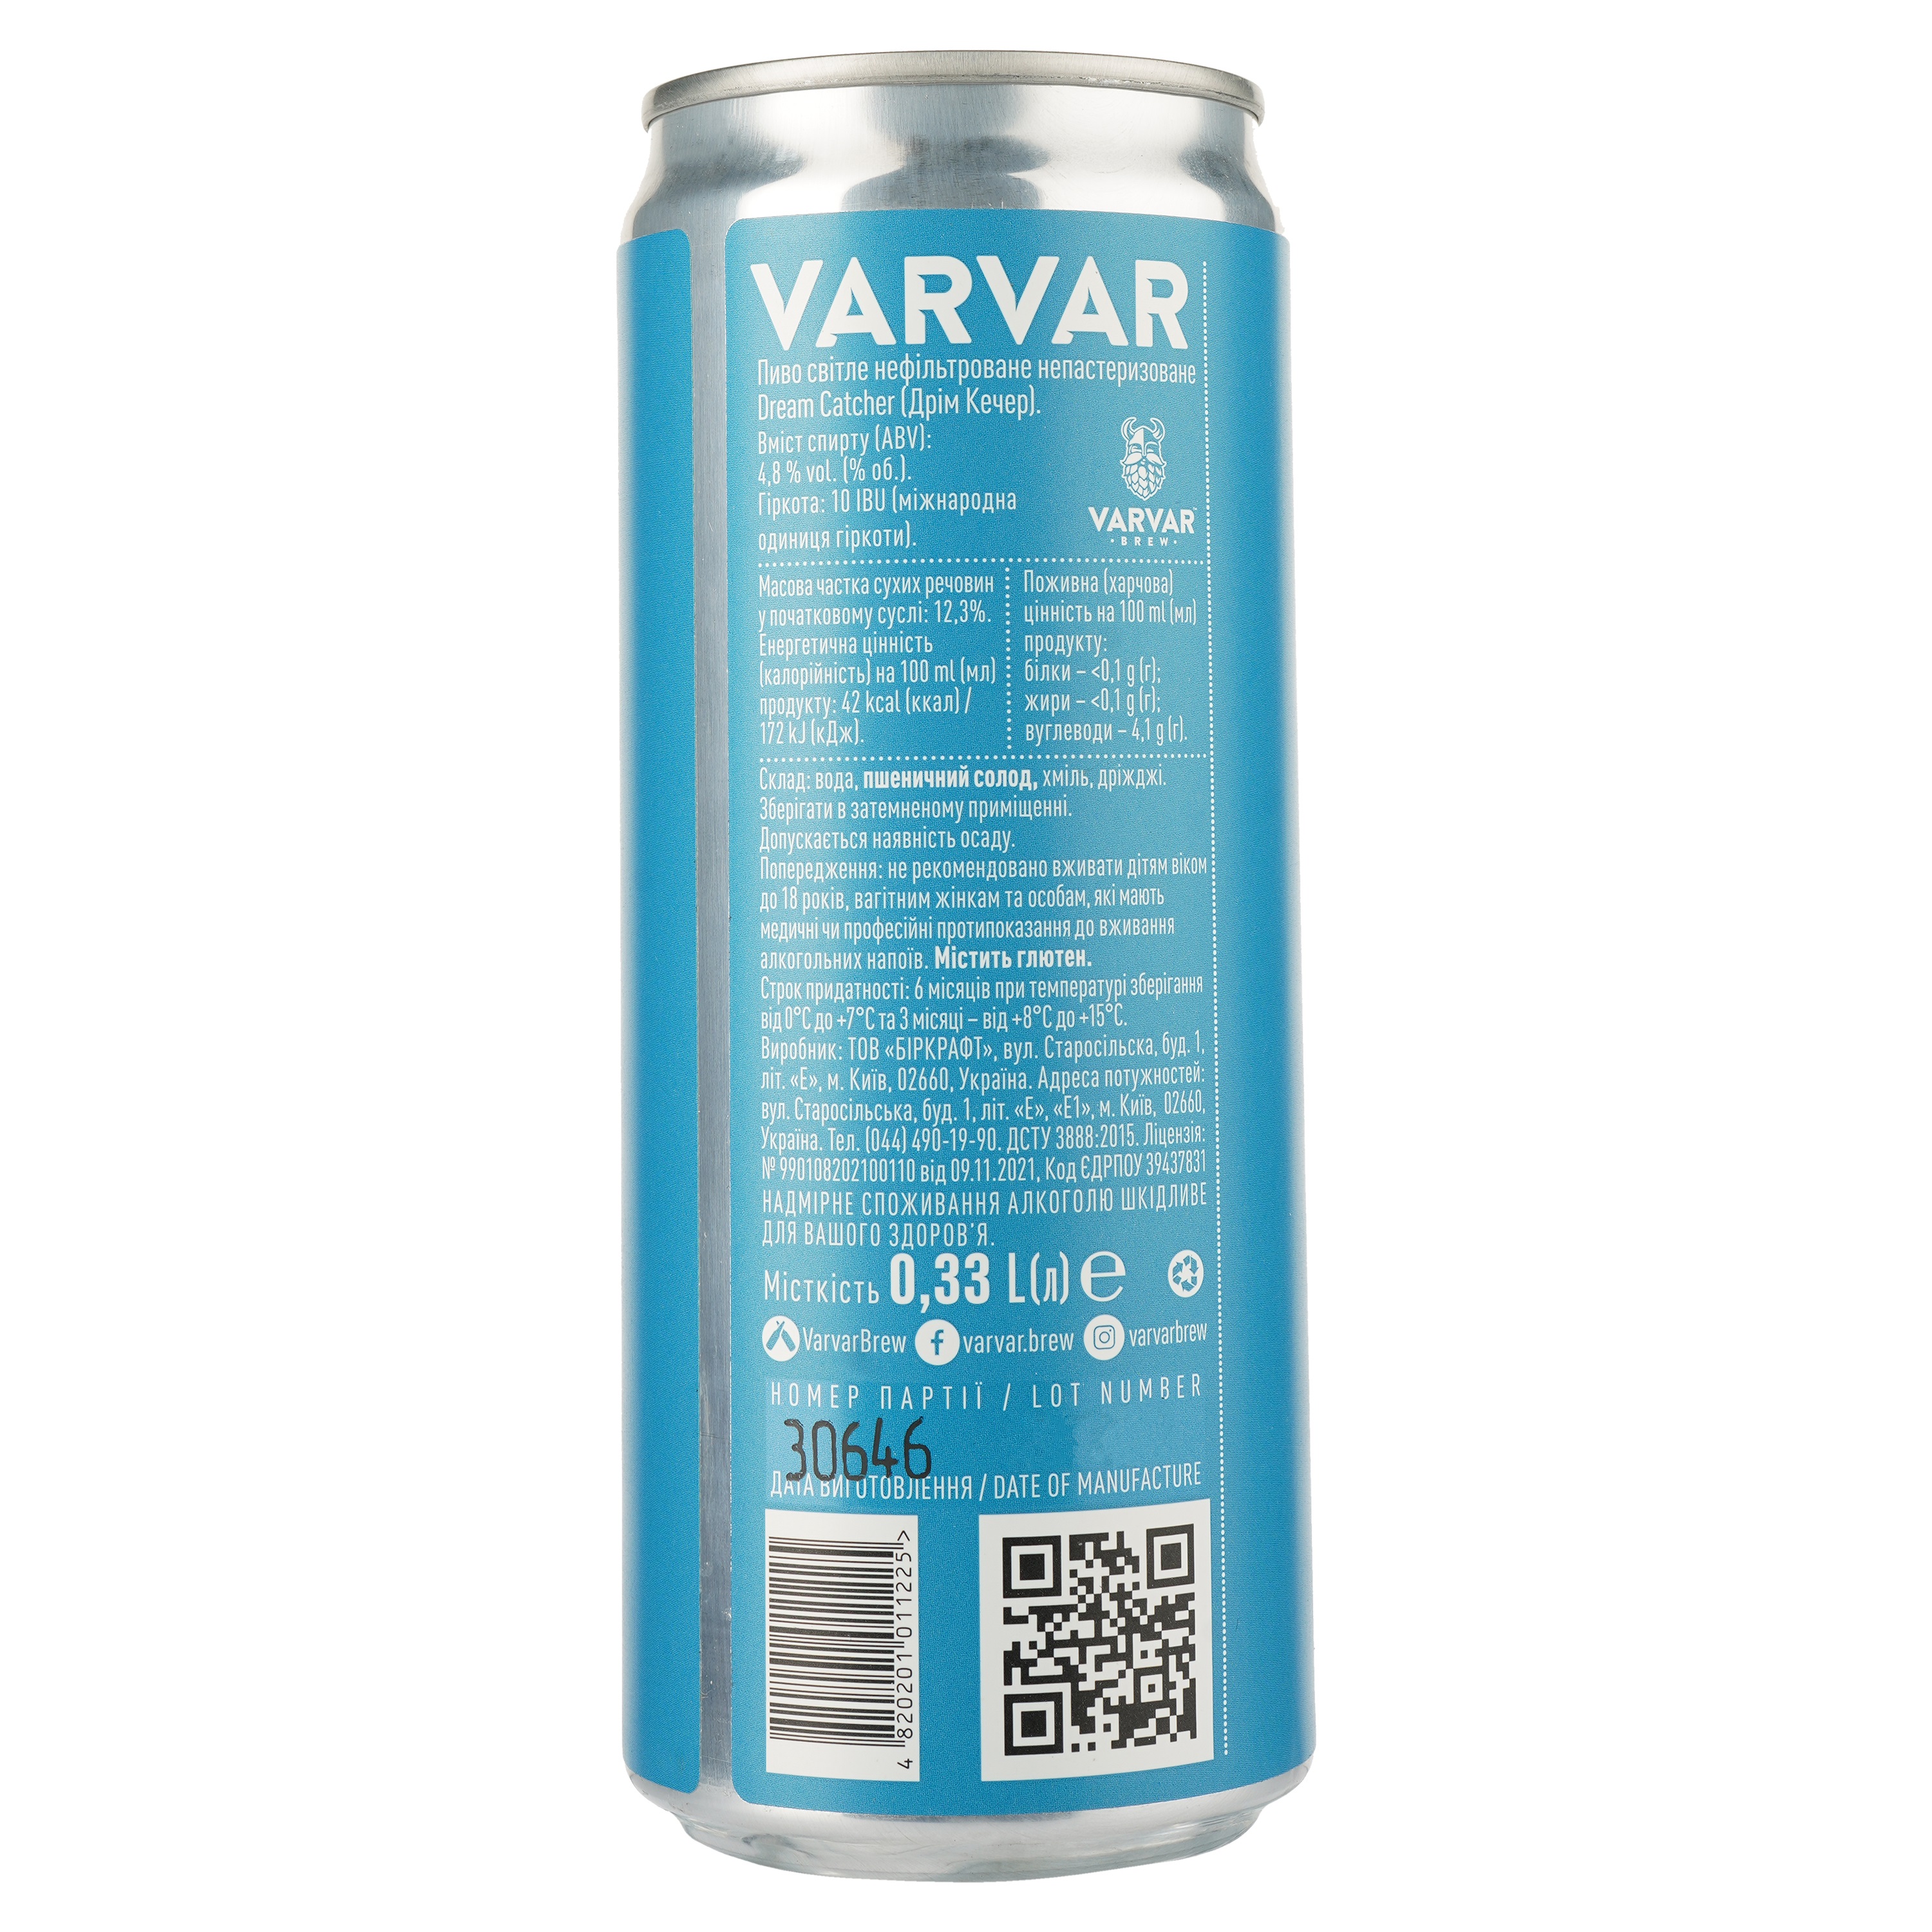 Пиво Varvar Dream Catcher, светлое, нефильтрованое, 4,8%, ж/б, 0,33 л - фото 2